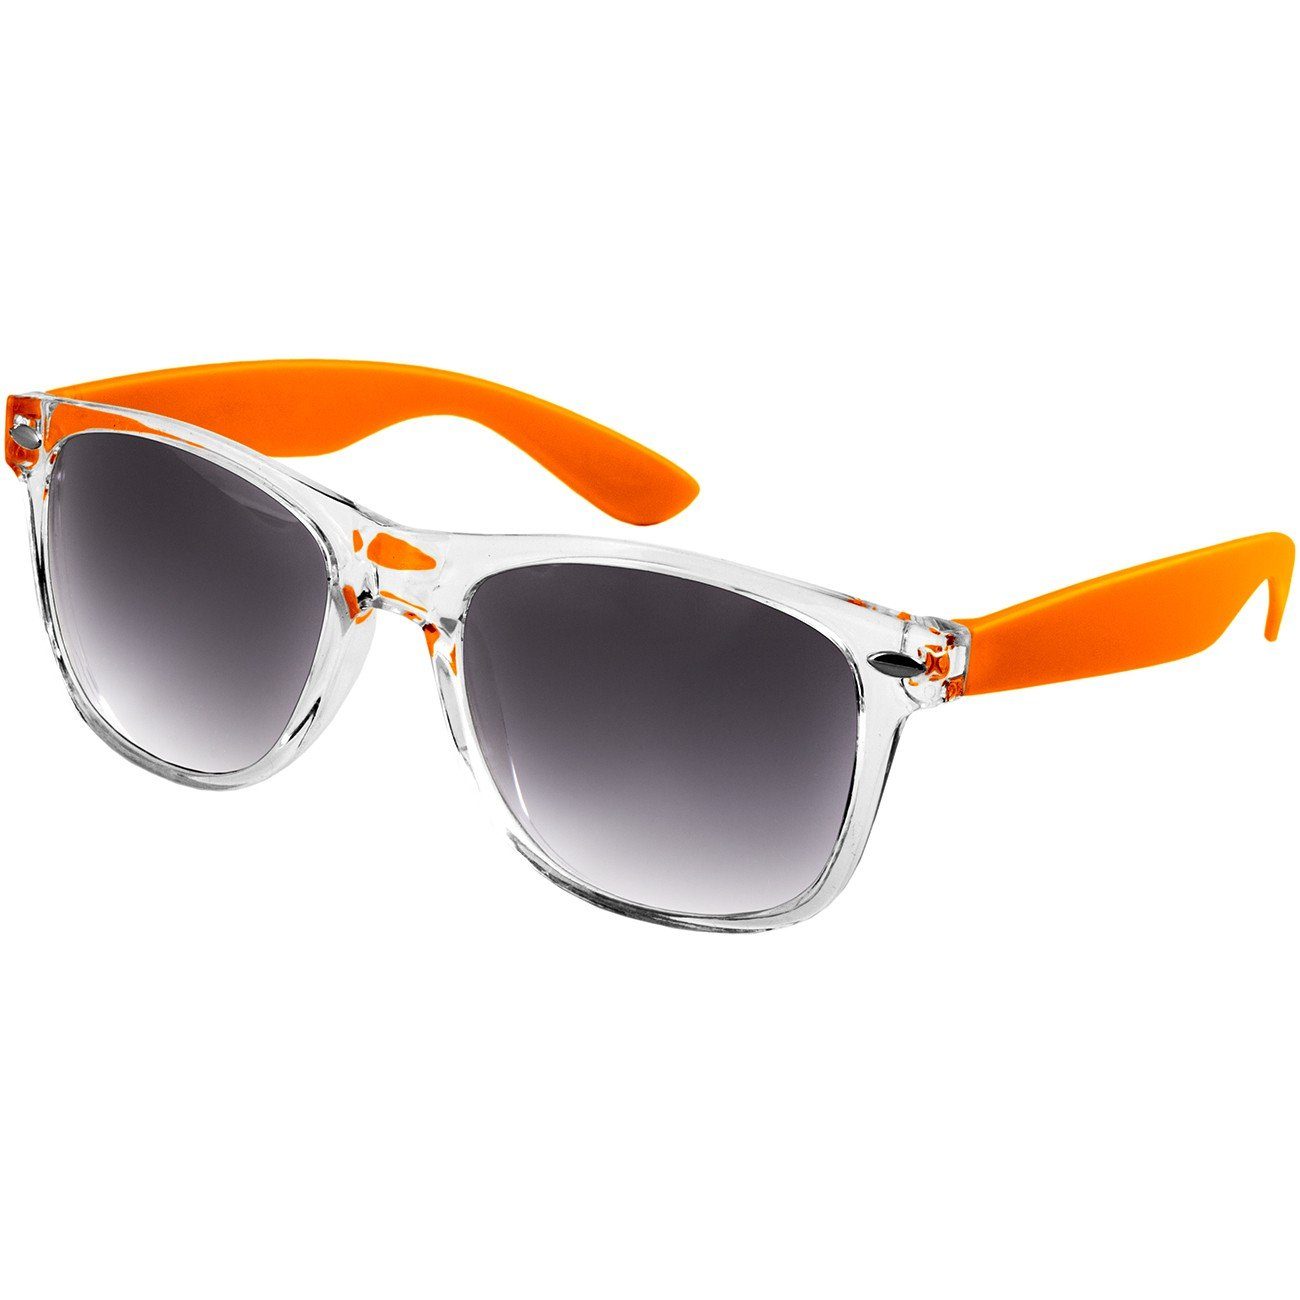 Caspar Sonnenbrille RETRO SG017 getönt Damen / orange Designbrille schwarz